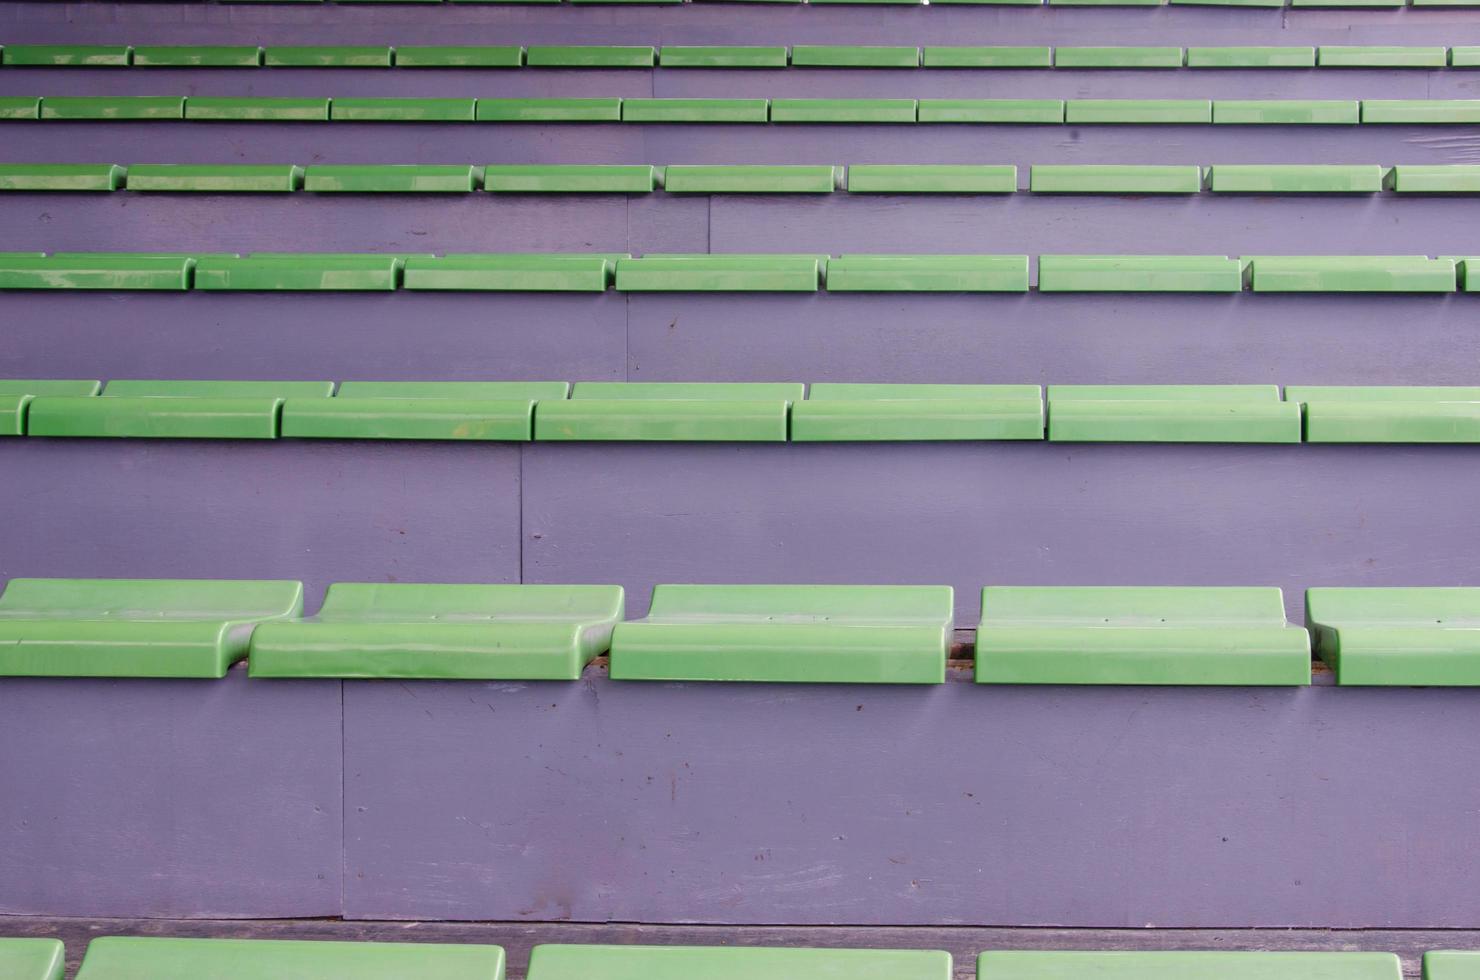 assentos verdes em um estádio foto